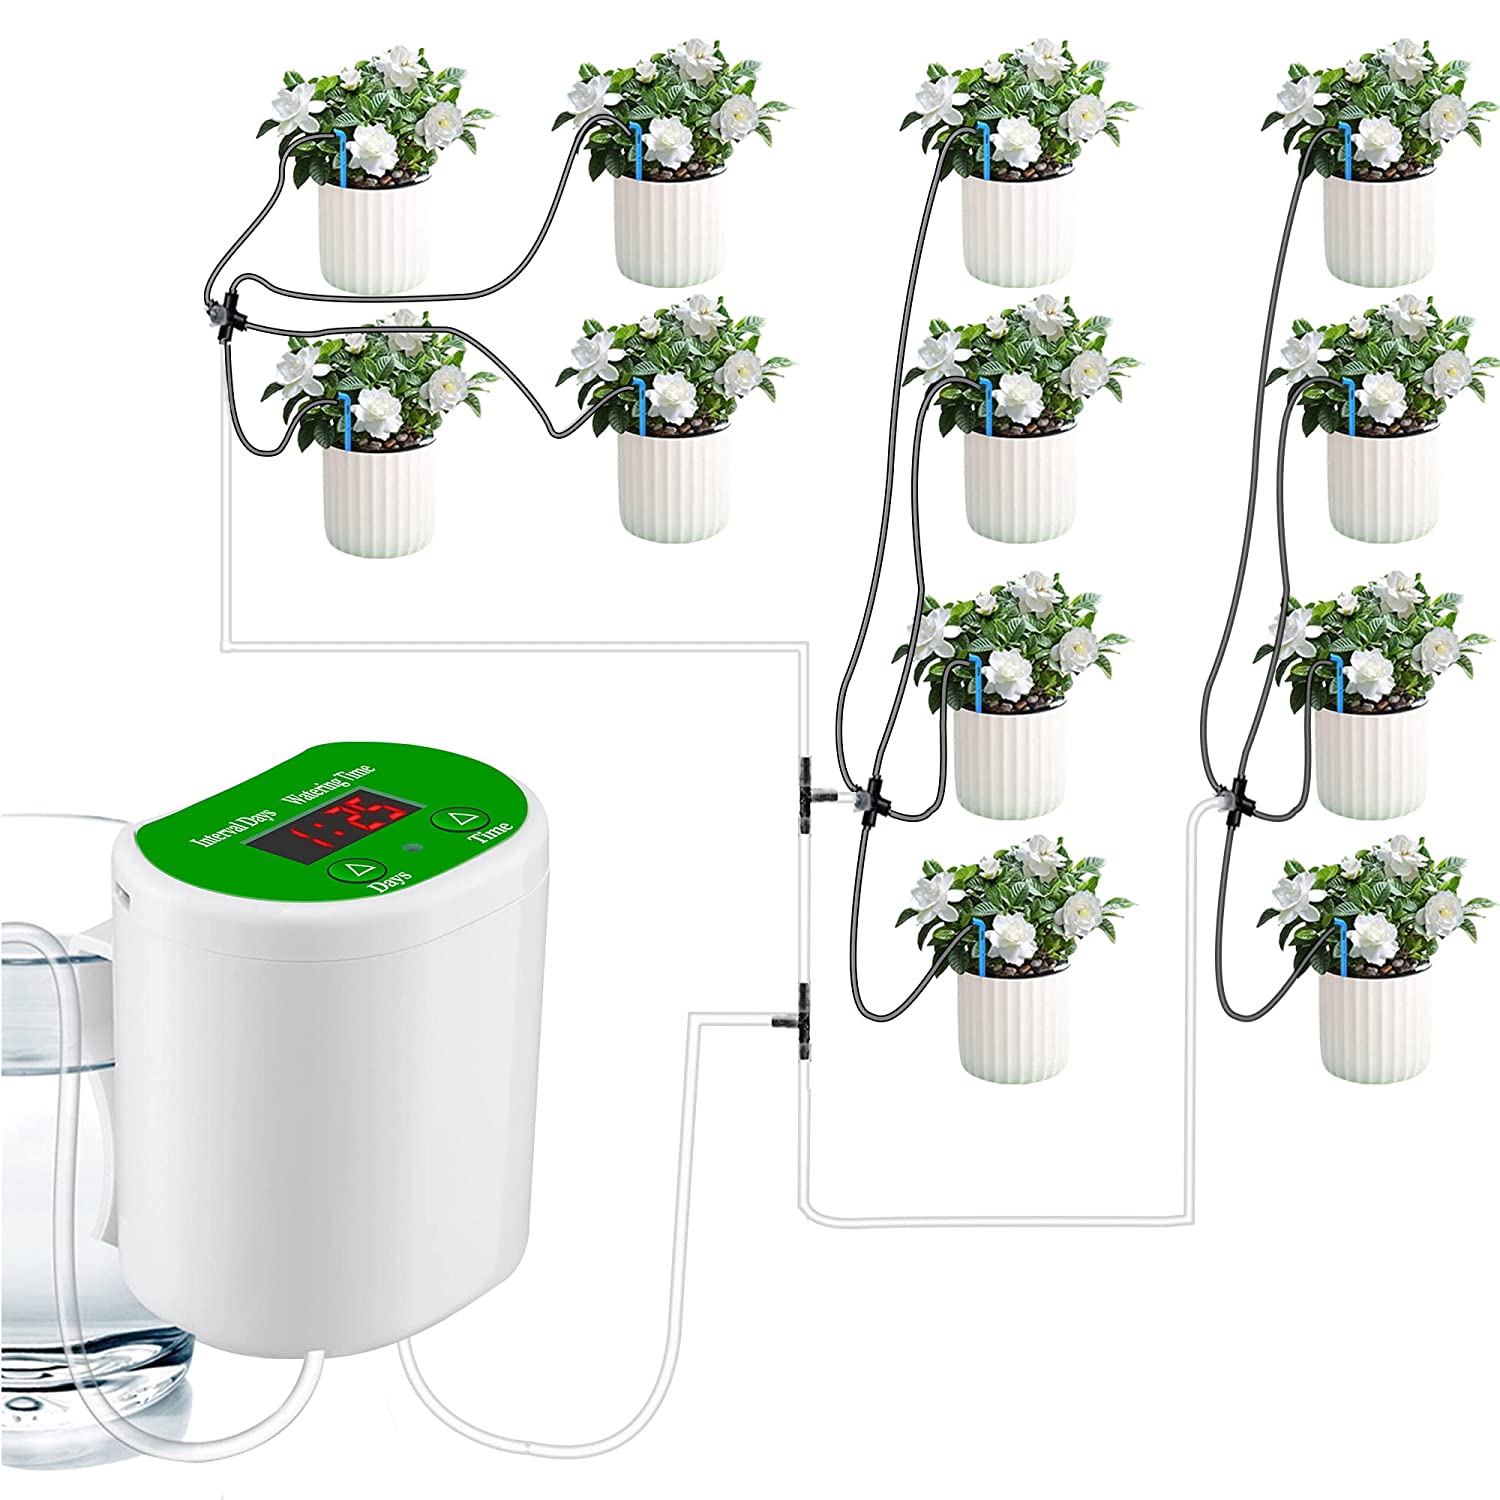 Aedcbaide Système d'arrosage automatique, kit goutte à goutte pour 12 plantes d'intérieur, affichage LED et système d'arrosage automatique rechargeable par USB Unité d'arrosage pour plantes en pot